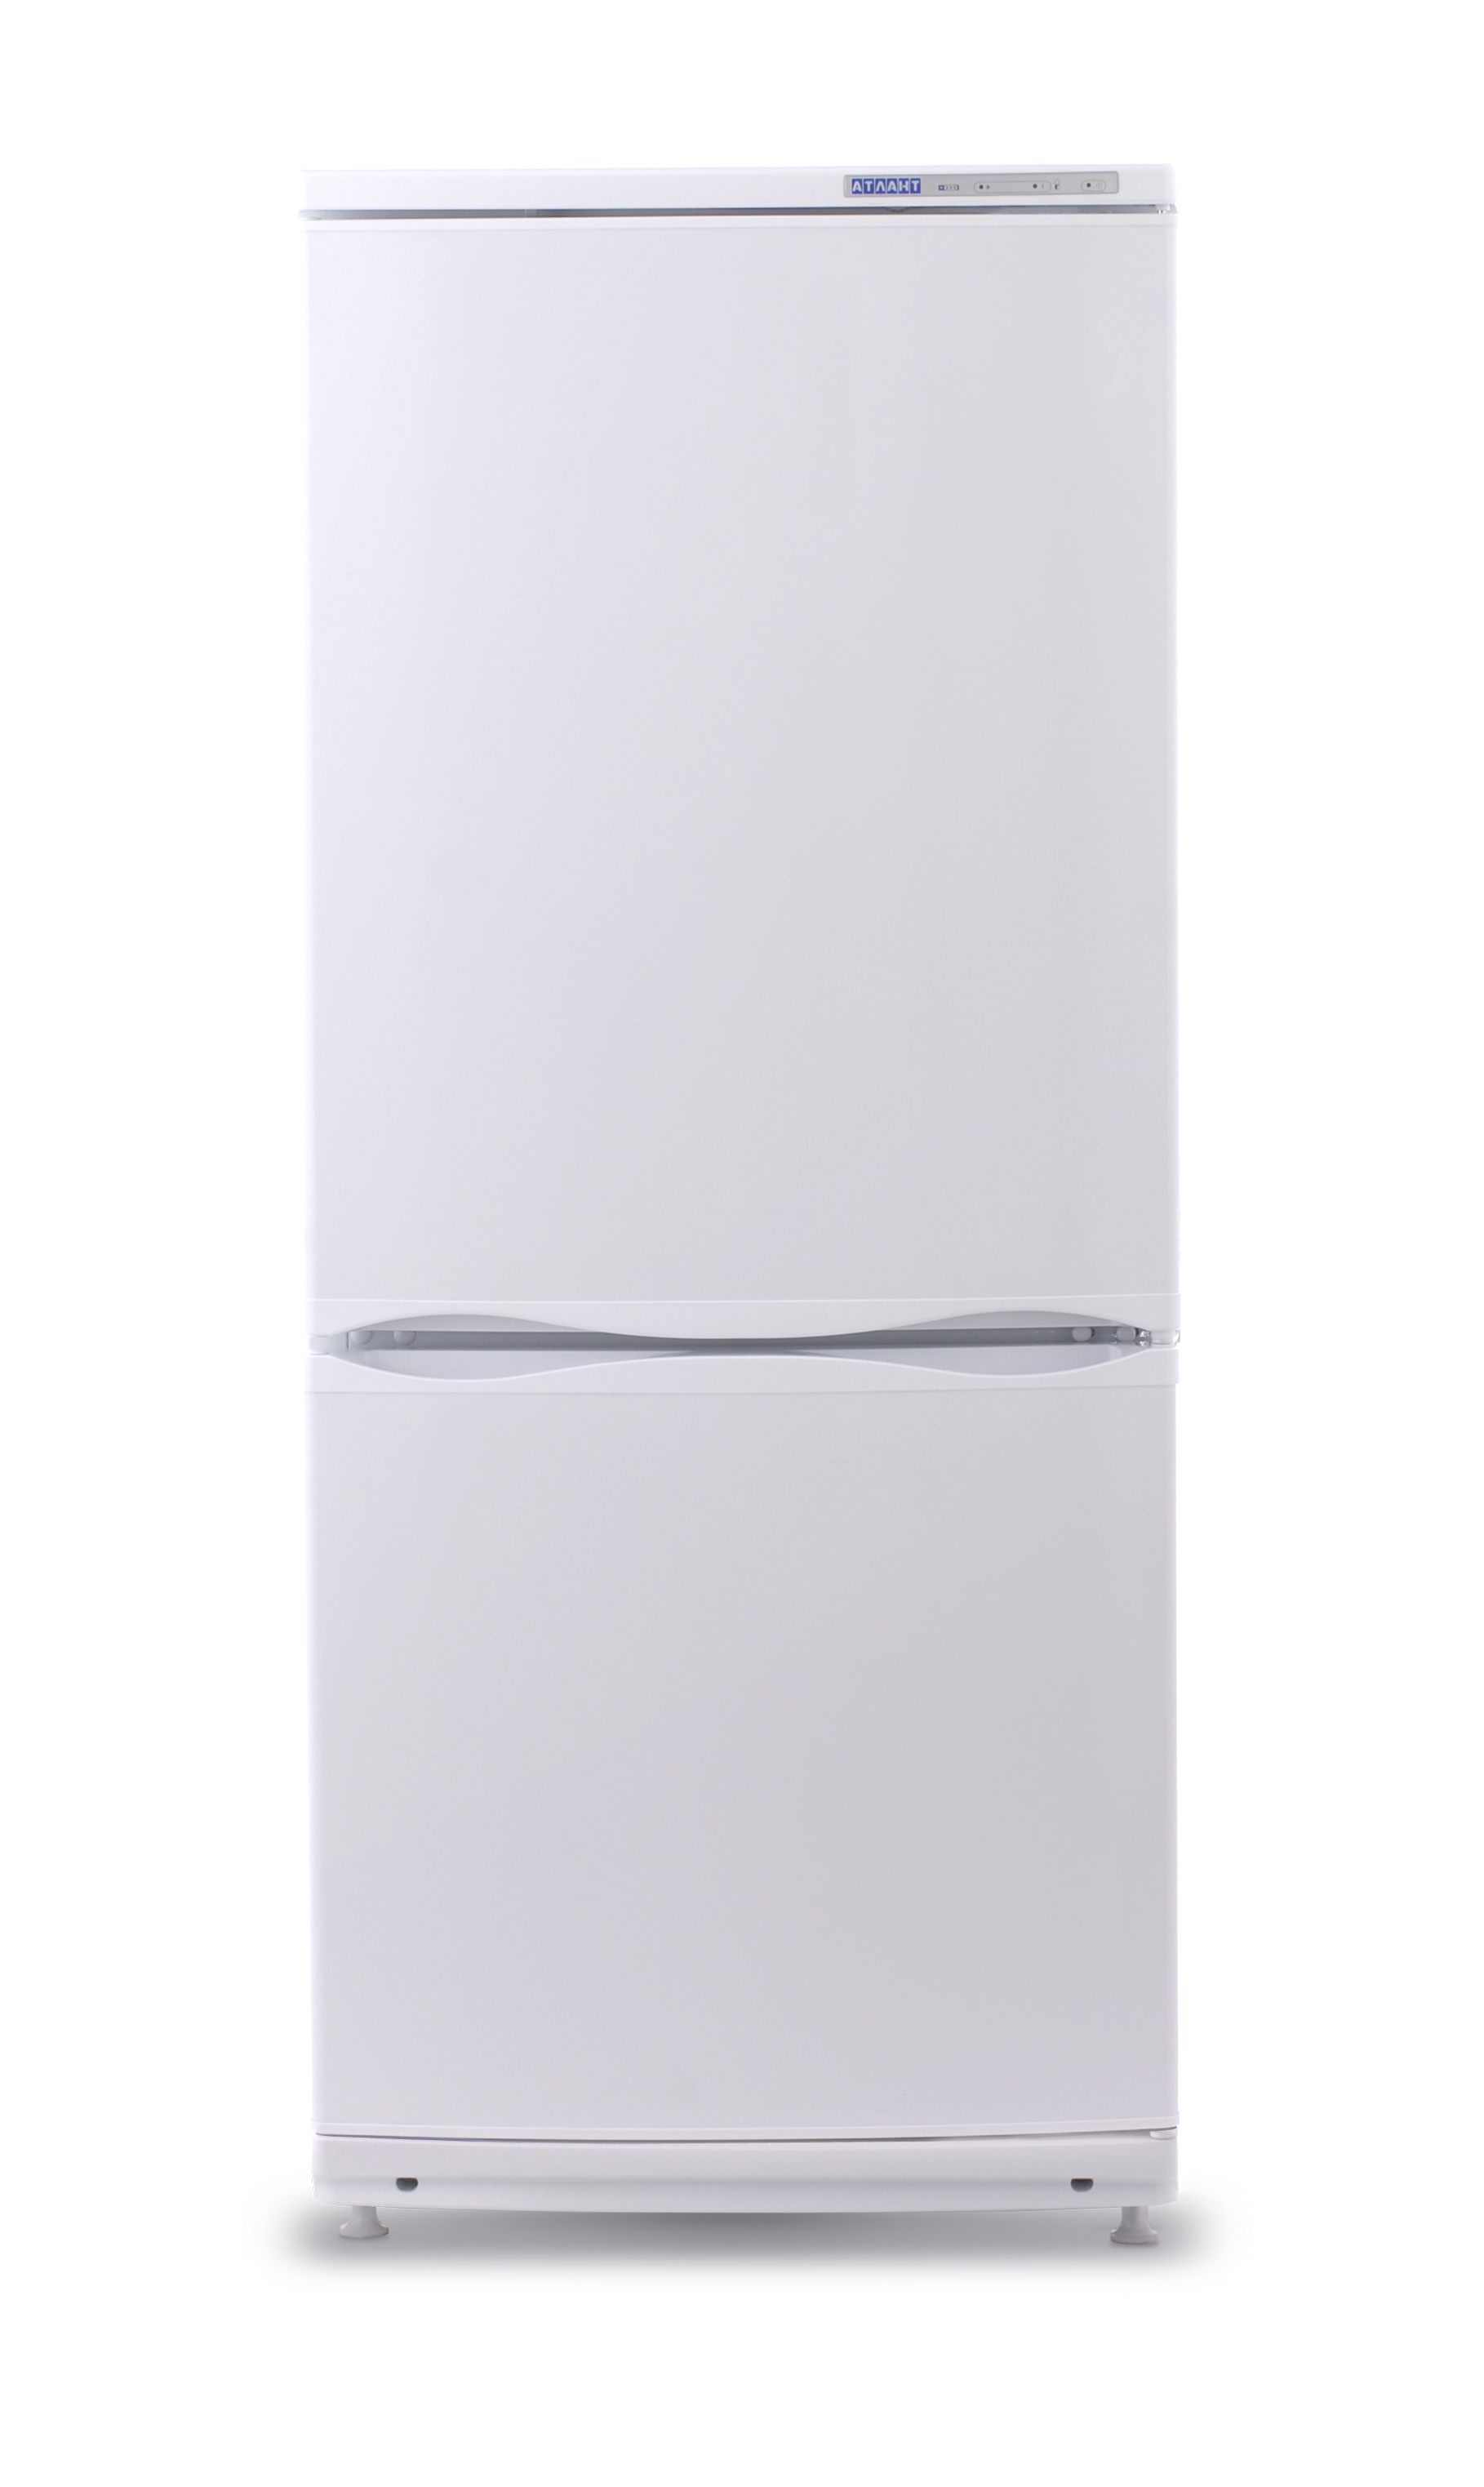 Холодильник Атлант 4008-022, цвет белый 117906 - фото 1